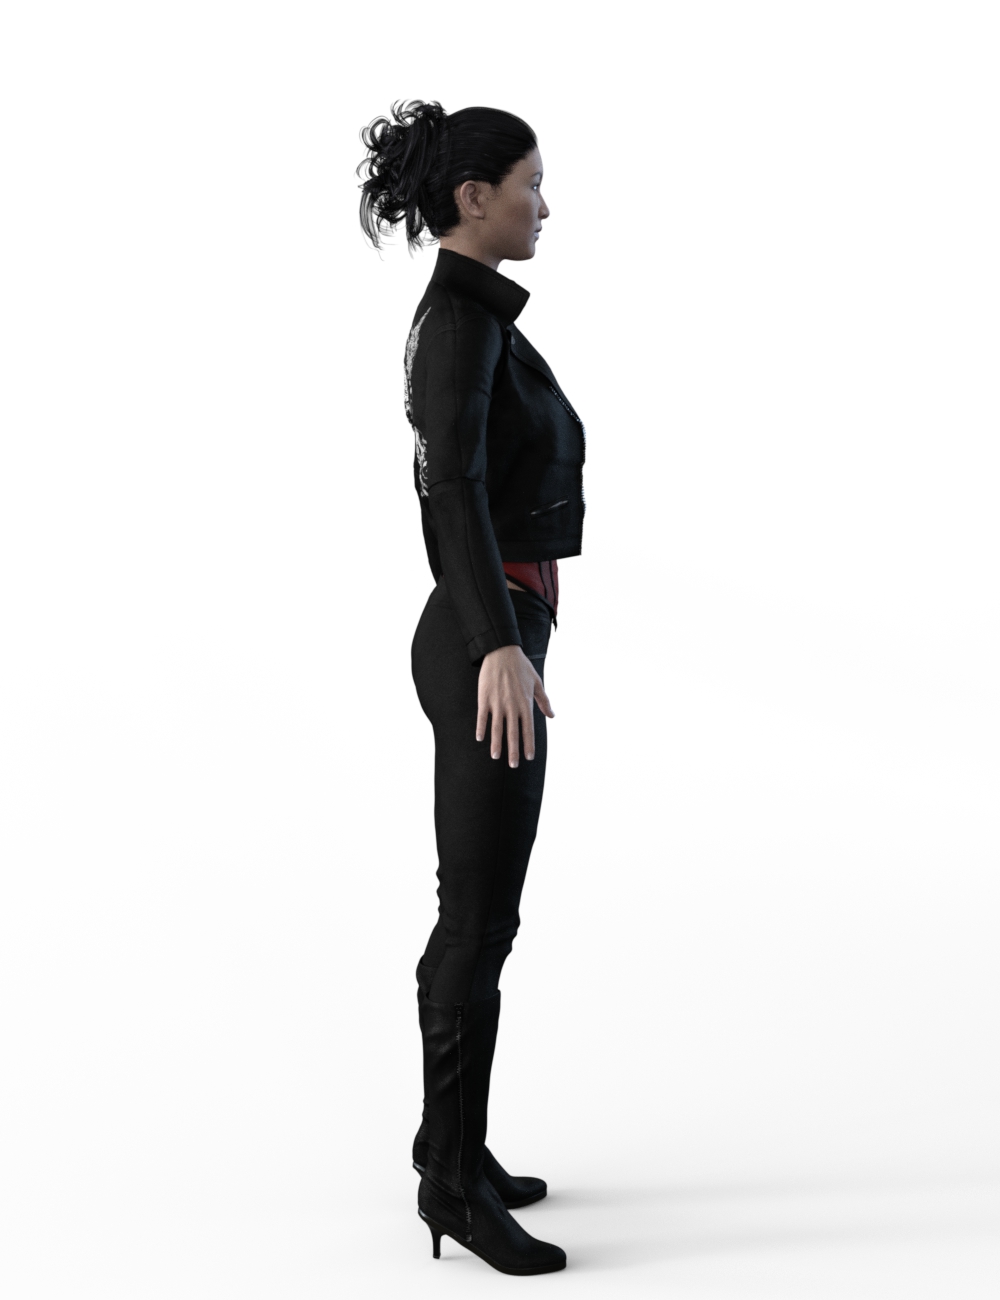 FBX- Mei Lin Vigilante Outfit by: Paleo, 3D Models by Daz 3D